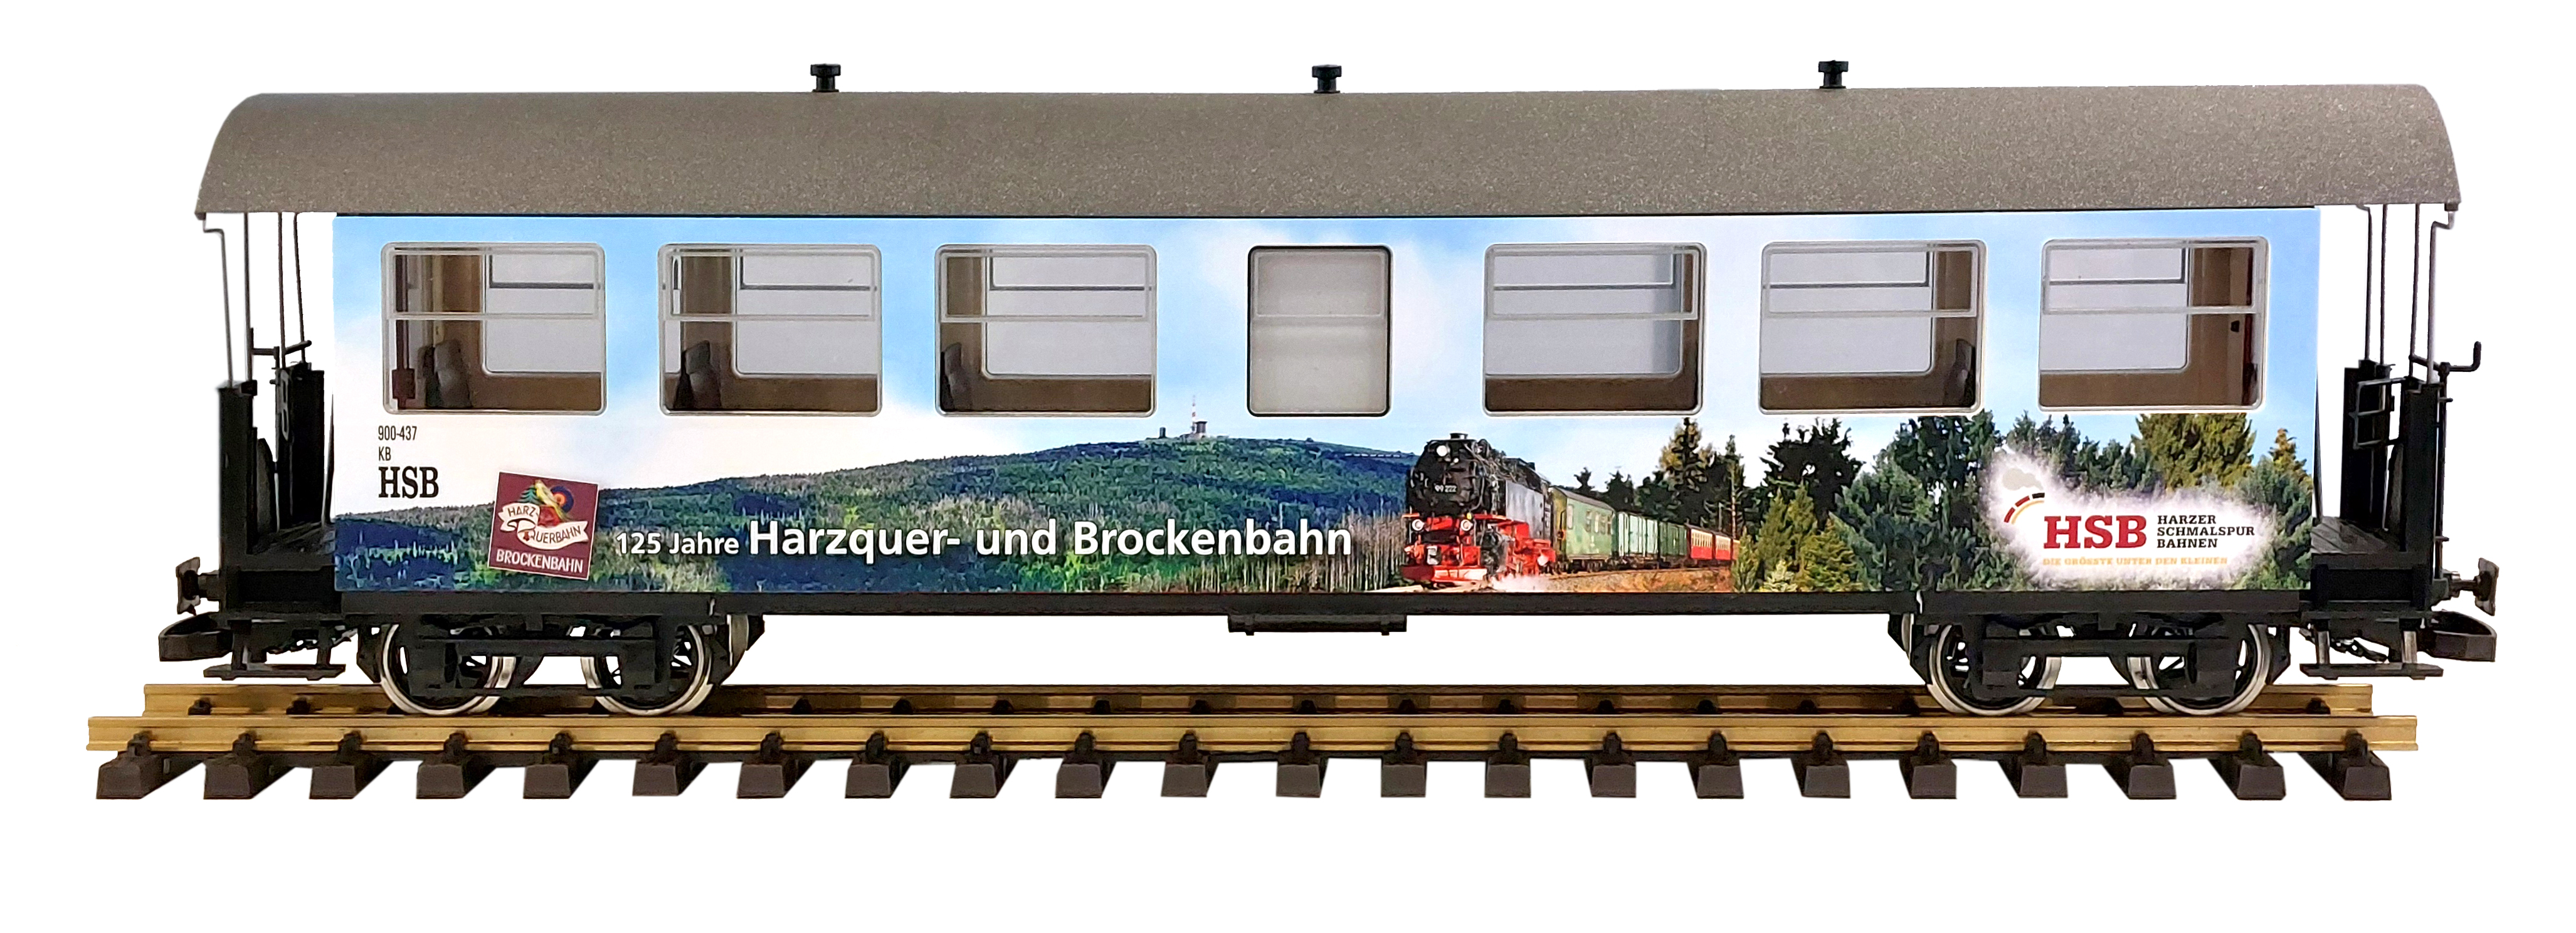 7 fenstriger Sonderwagen zum 125 Jahre Harzquer-und Brockenbahn Jubilum 2024. Wagen Nummer 900-437.